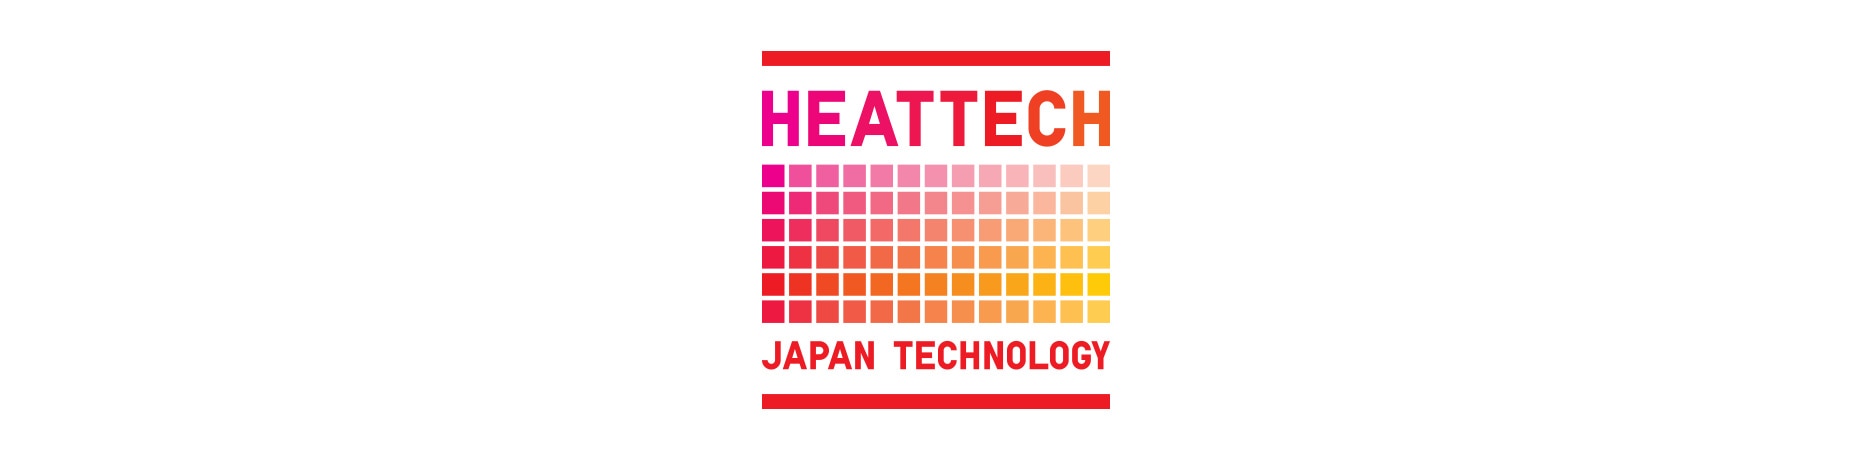 Heattech